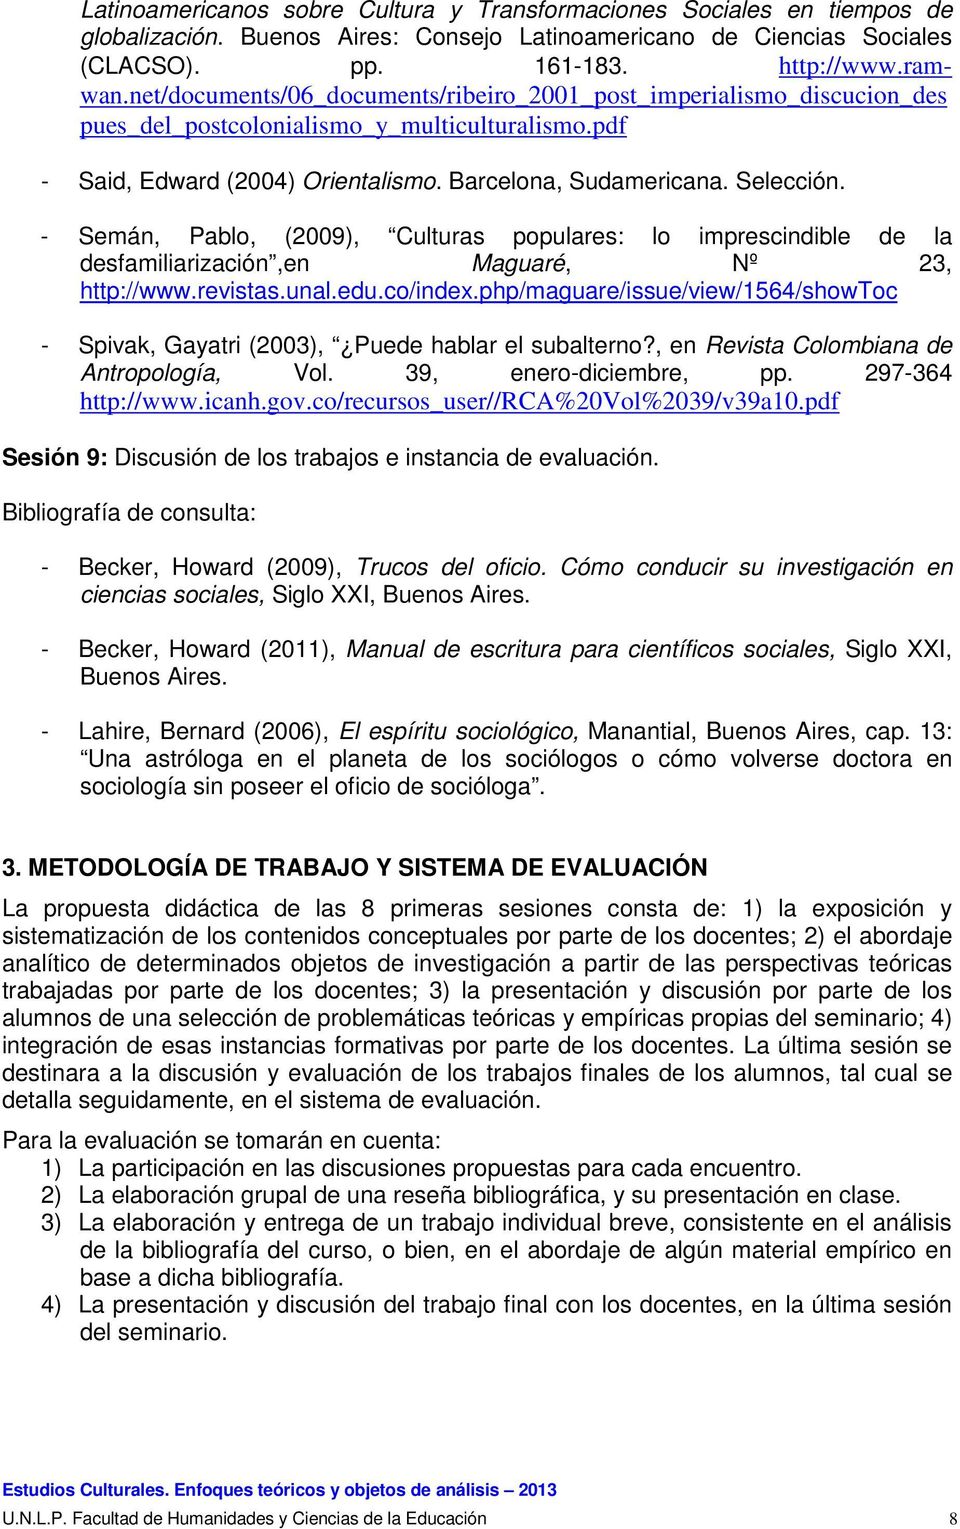 - Semán, Pablo, (2009), Culturas populares: lo imprescindible de la desfamiliarización,en Maguaré, Nº 23, http://www.revistas.unal.edu.co/index.